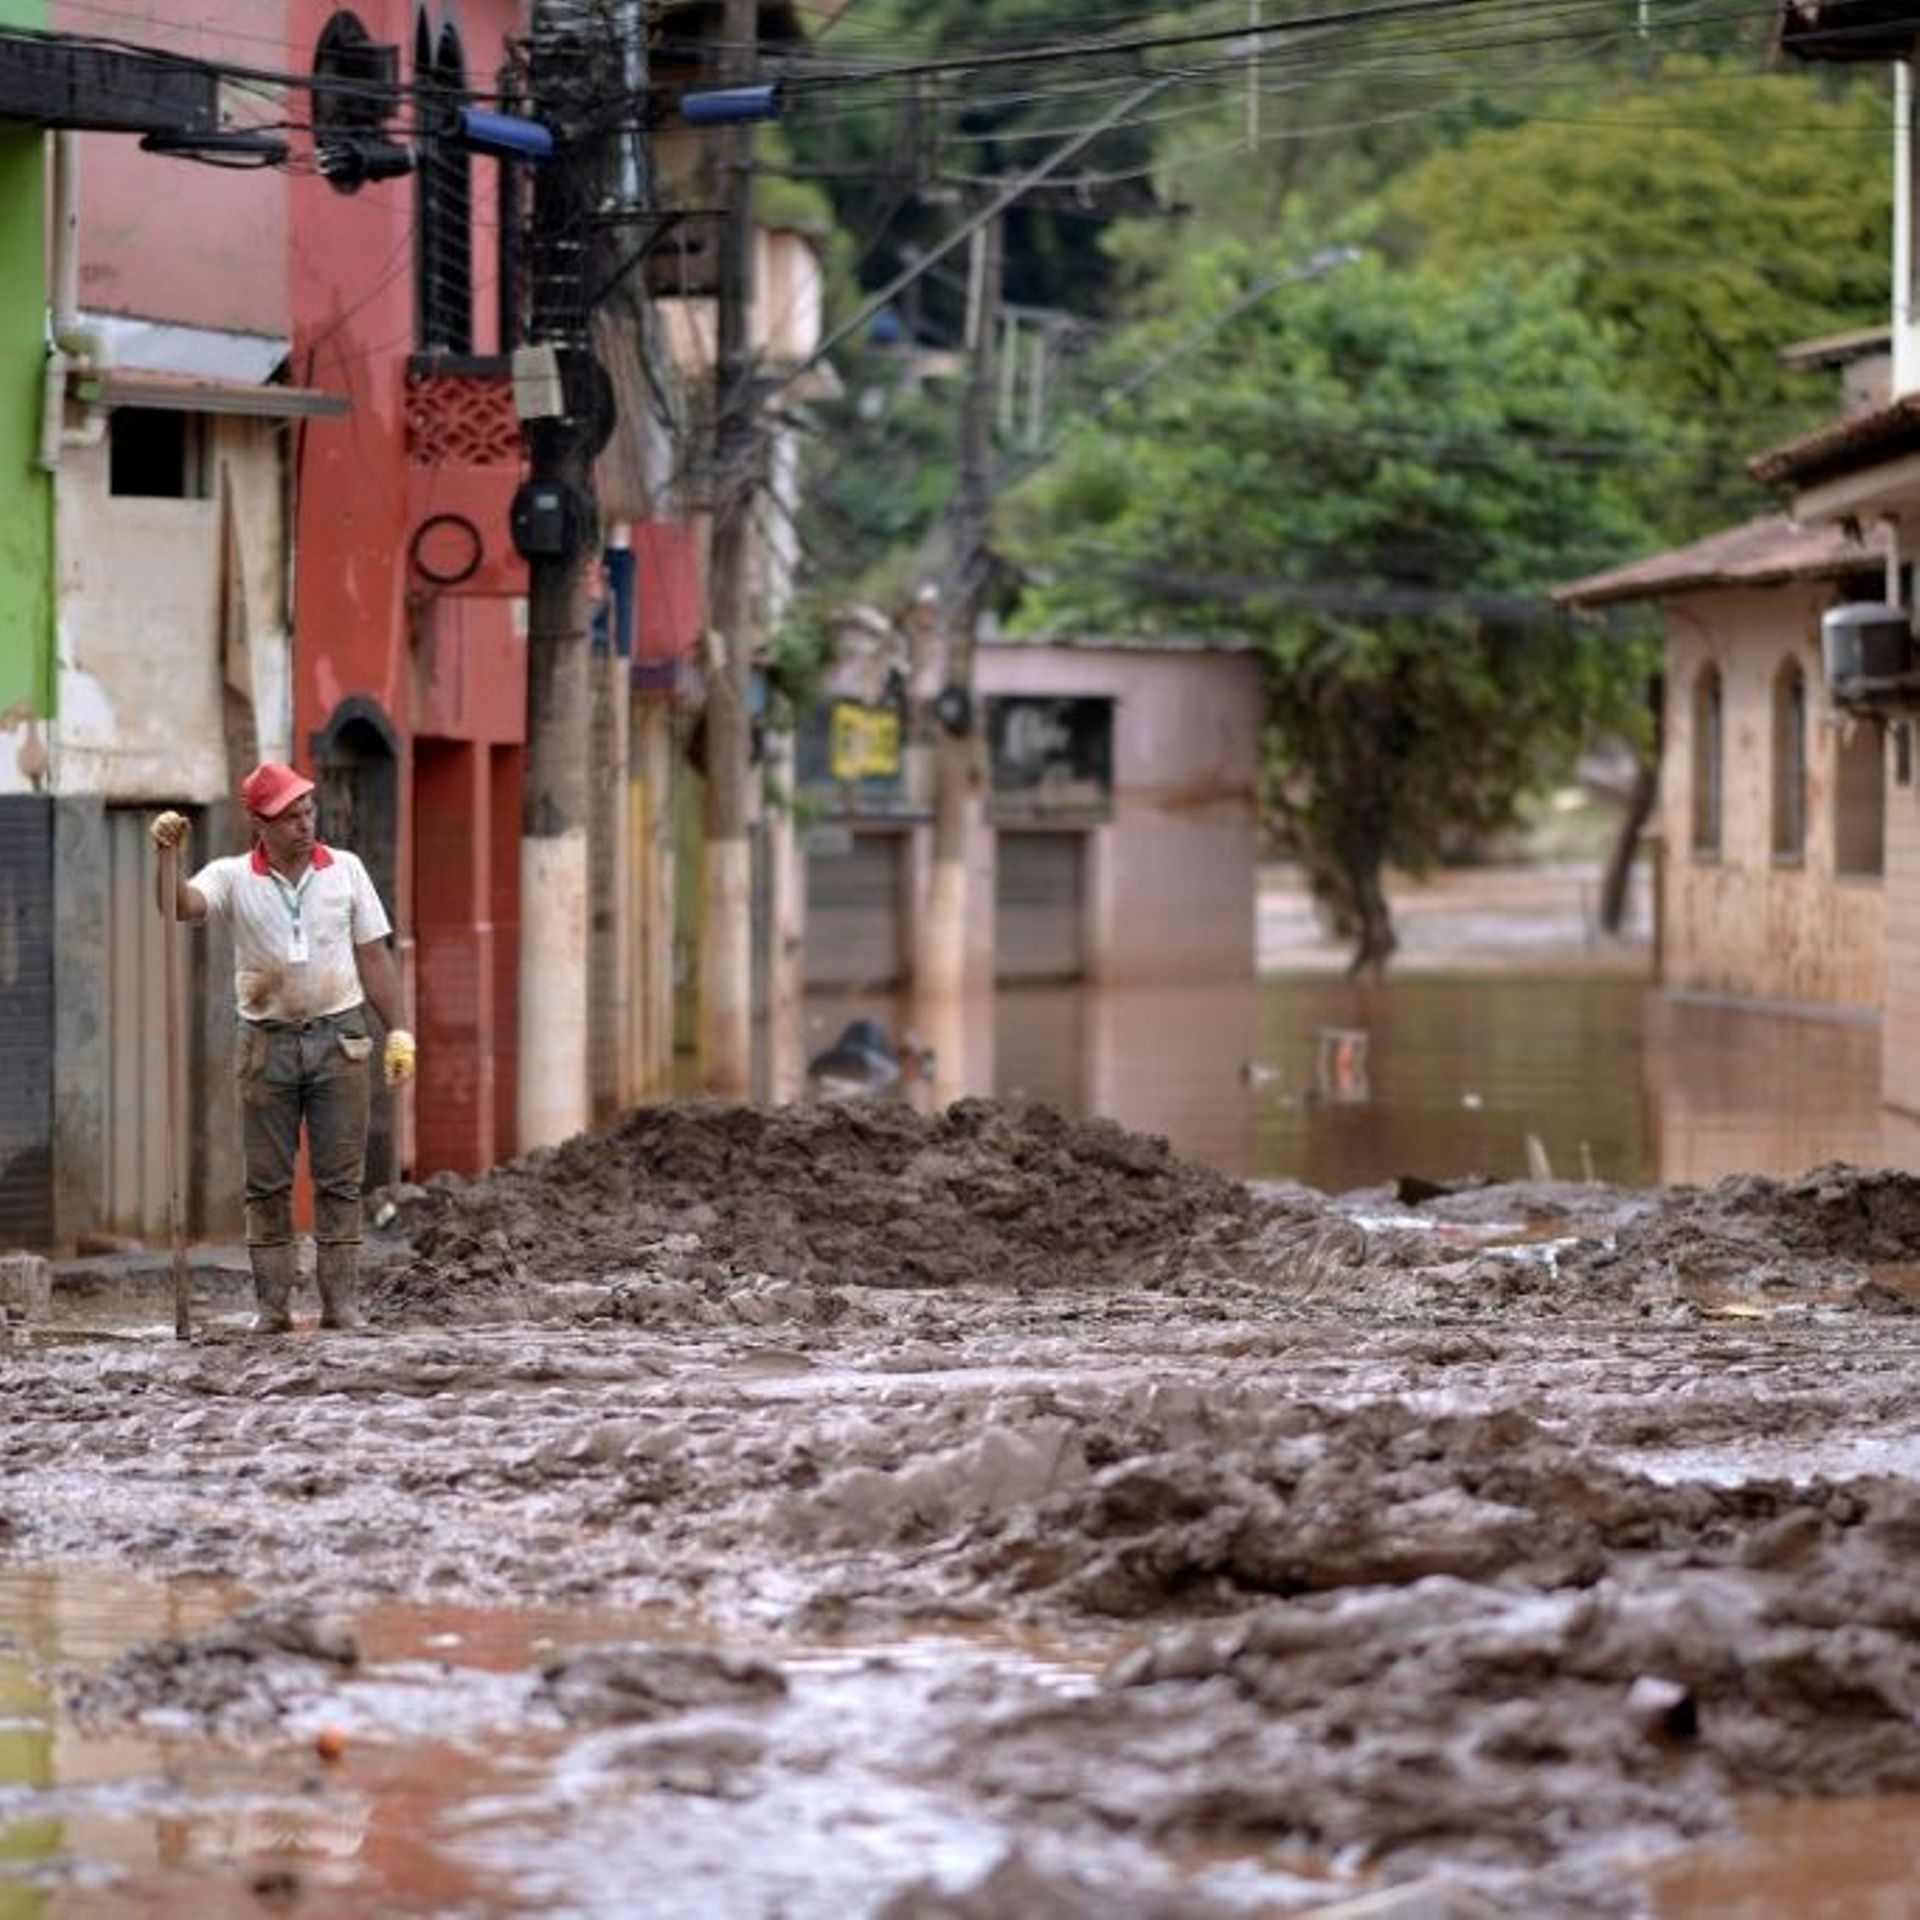 Un homme tente de nettoyer une rue après les inondations à Raposos, dans le sud-est du Brésil, le 11 janvier 2022